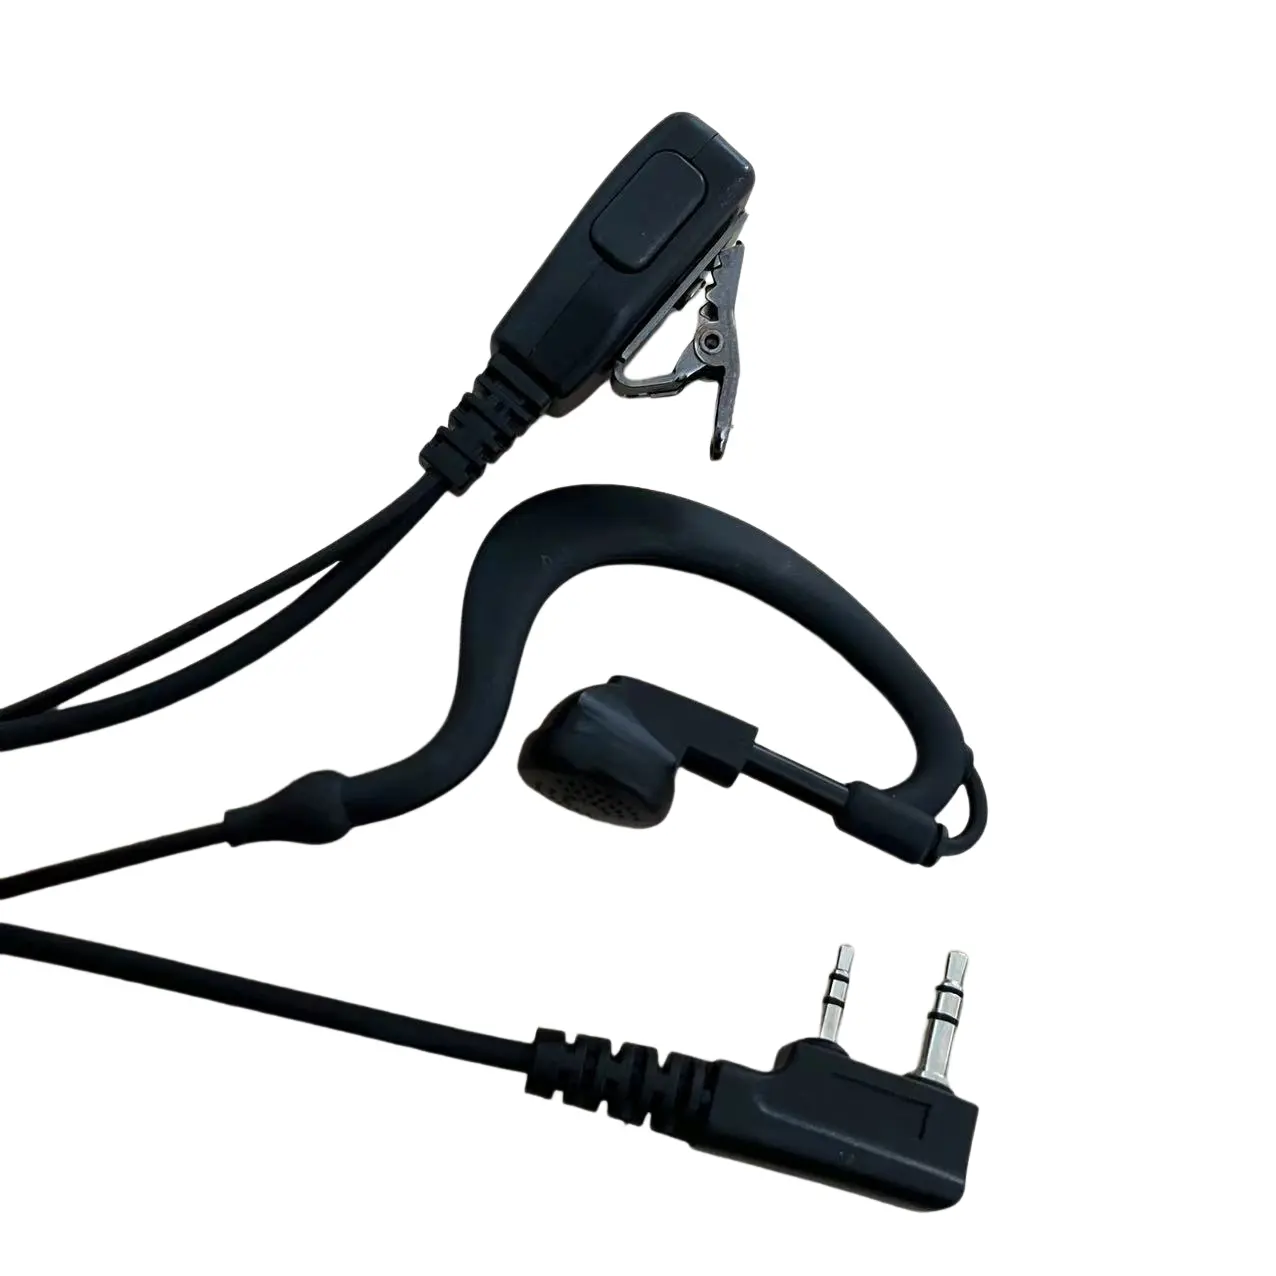 Baofeng walkie talkie de segurança, fone de ouvido com microfone acústico flexível e transparente, rádio com dois sentidos